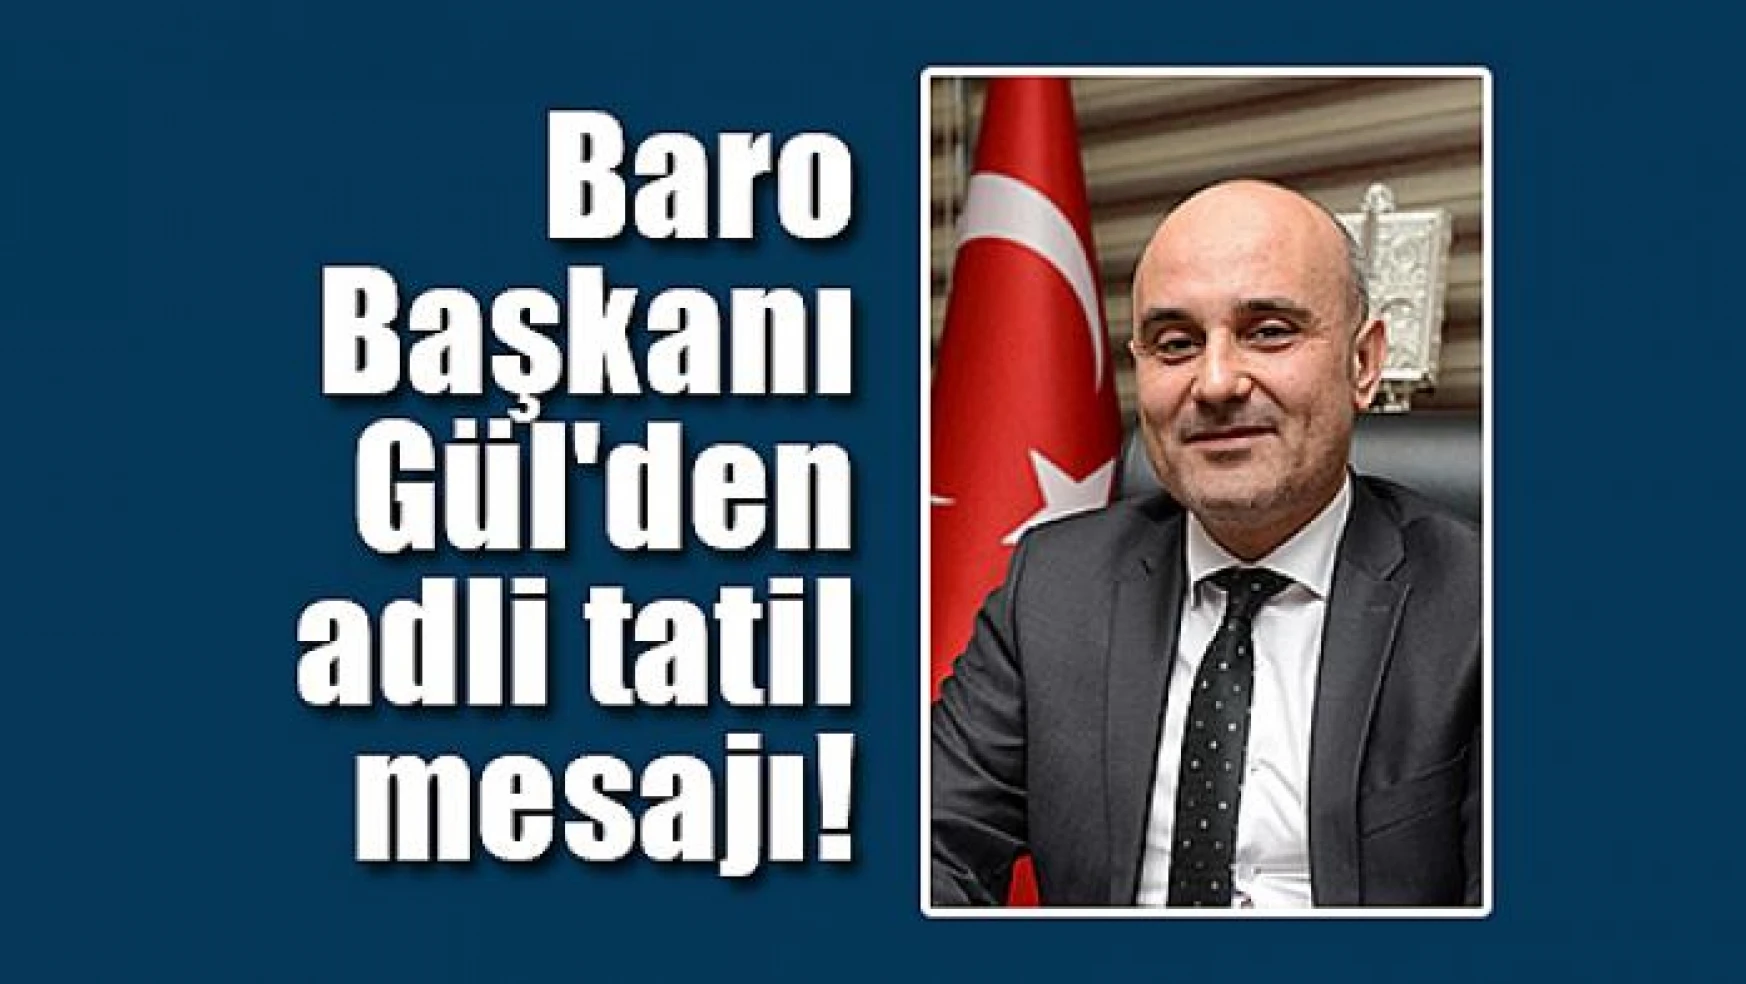 Baro Başkanı Gül'den adli tatil mesajı